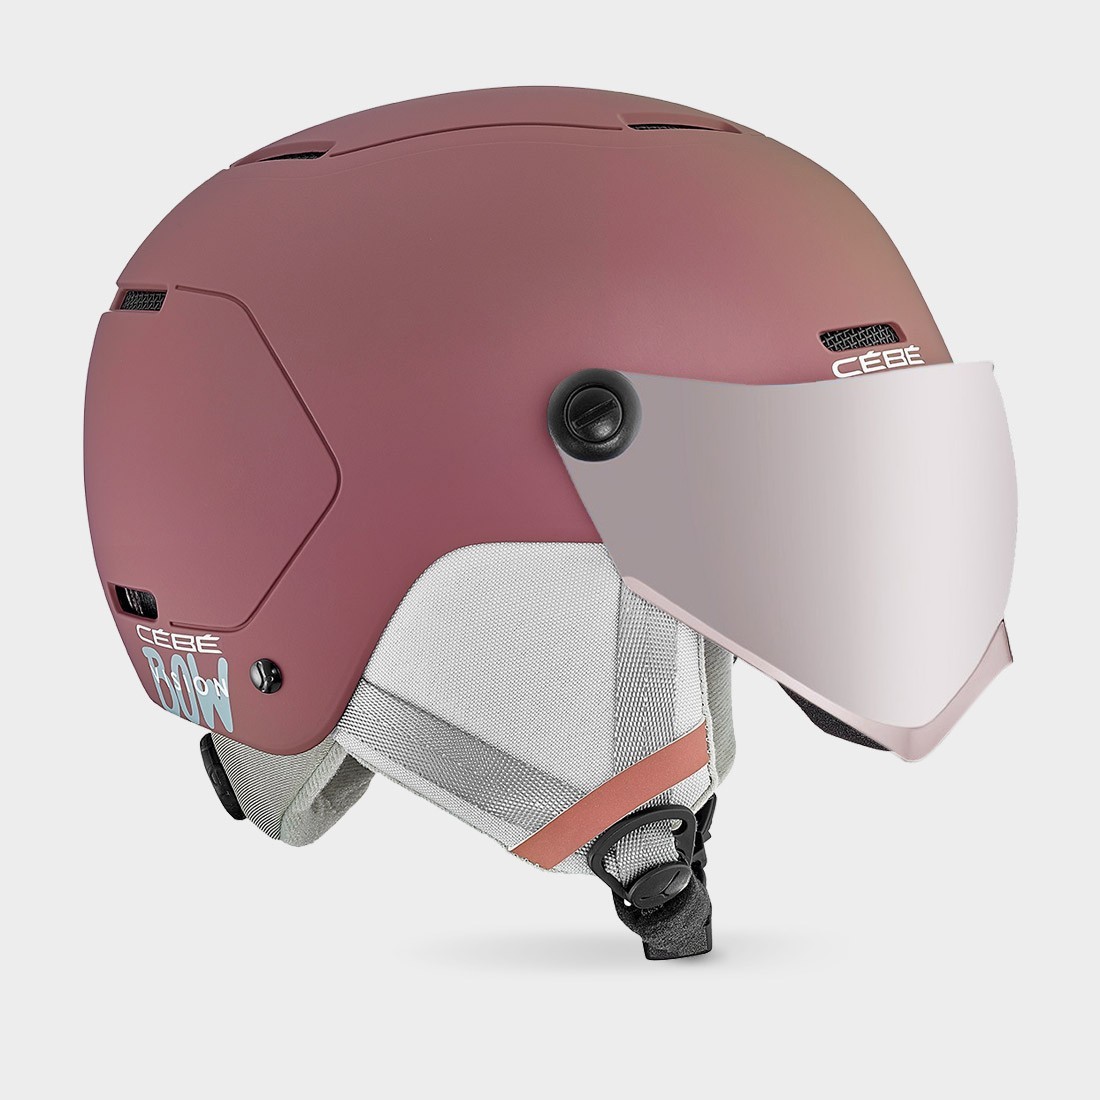 CÉBÉ-BOW VISION-バイザー付きジュニア用スキーヘルメット